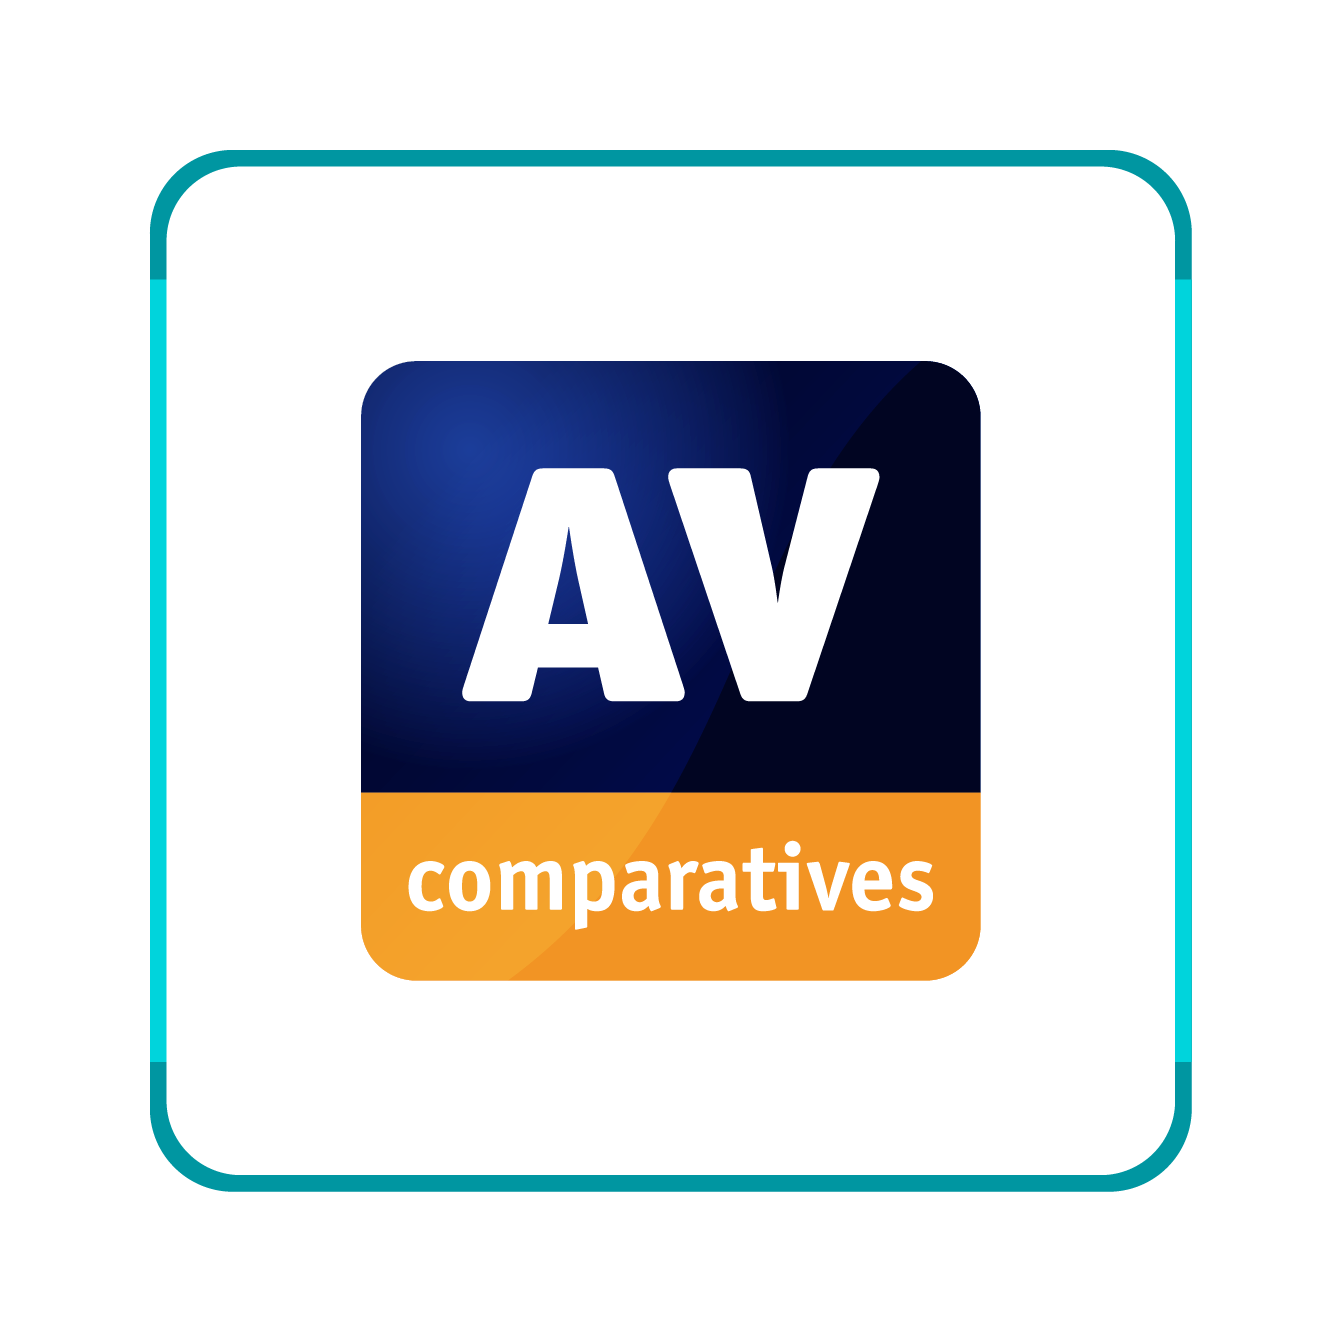 AV-Comparatives logo